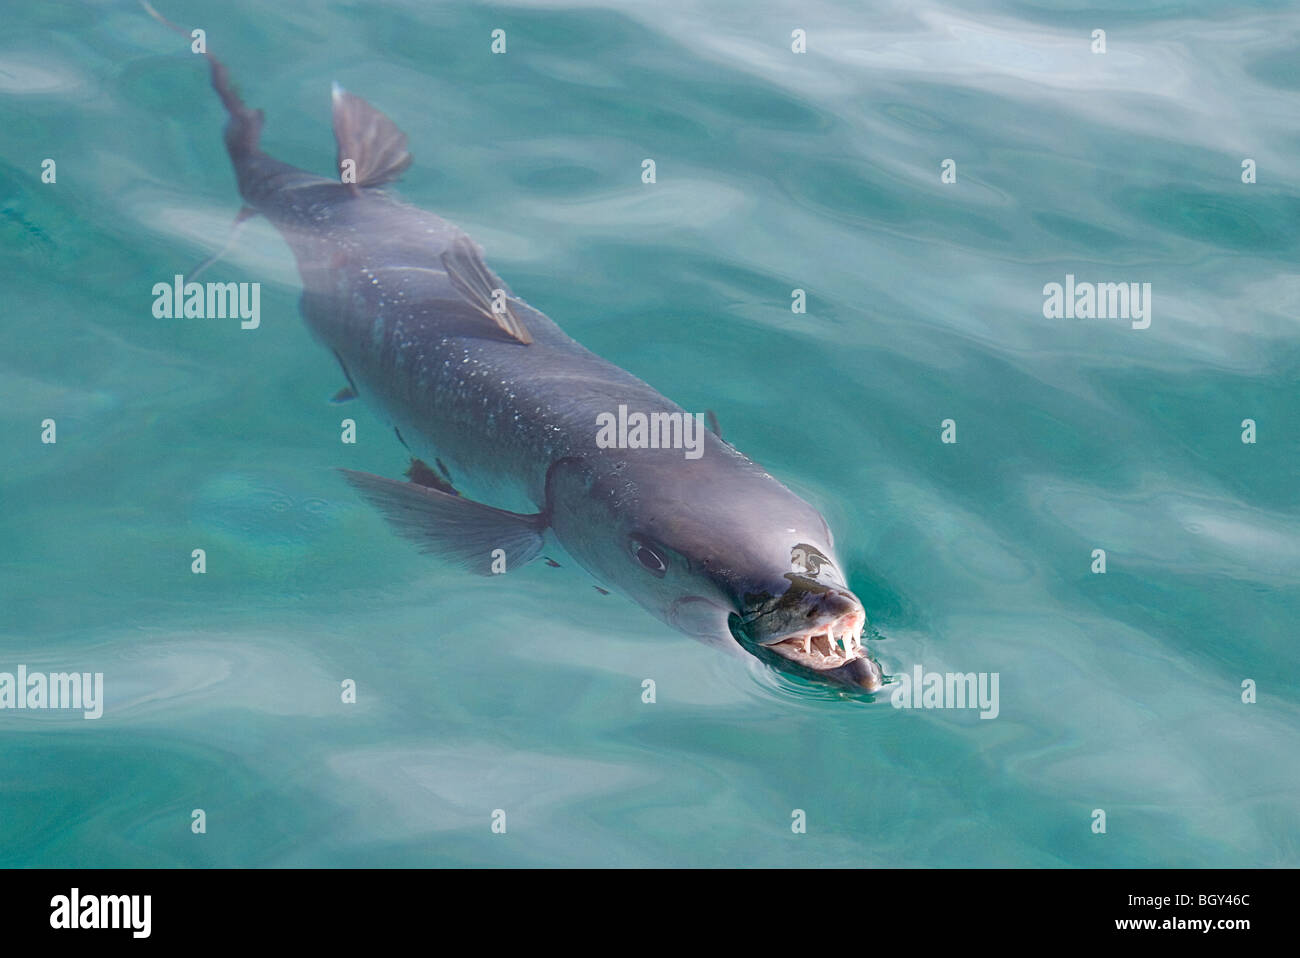 Ein großer Barracuda zeigt seine Zähne, während es sich etwas an der Oberfläche in der Karibik schnappt. Dieser war ungefähr 4 Fuß lang. Stockfoto